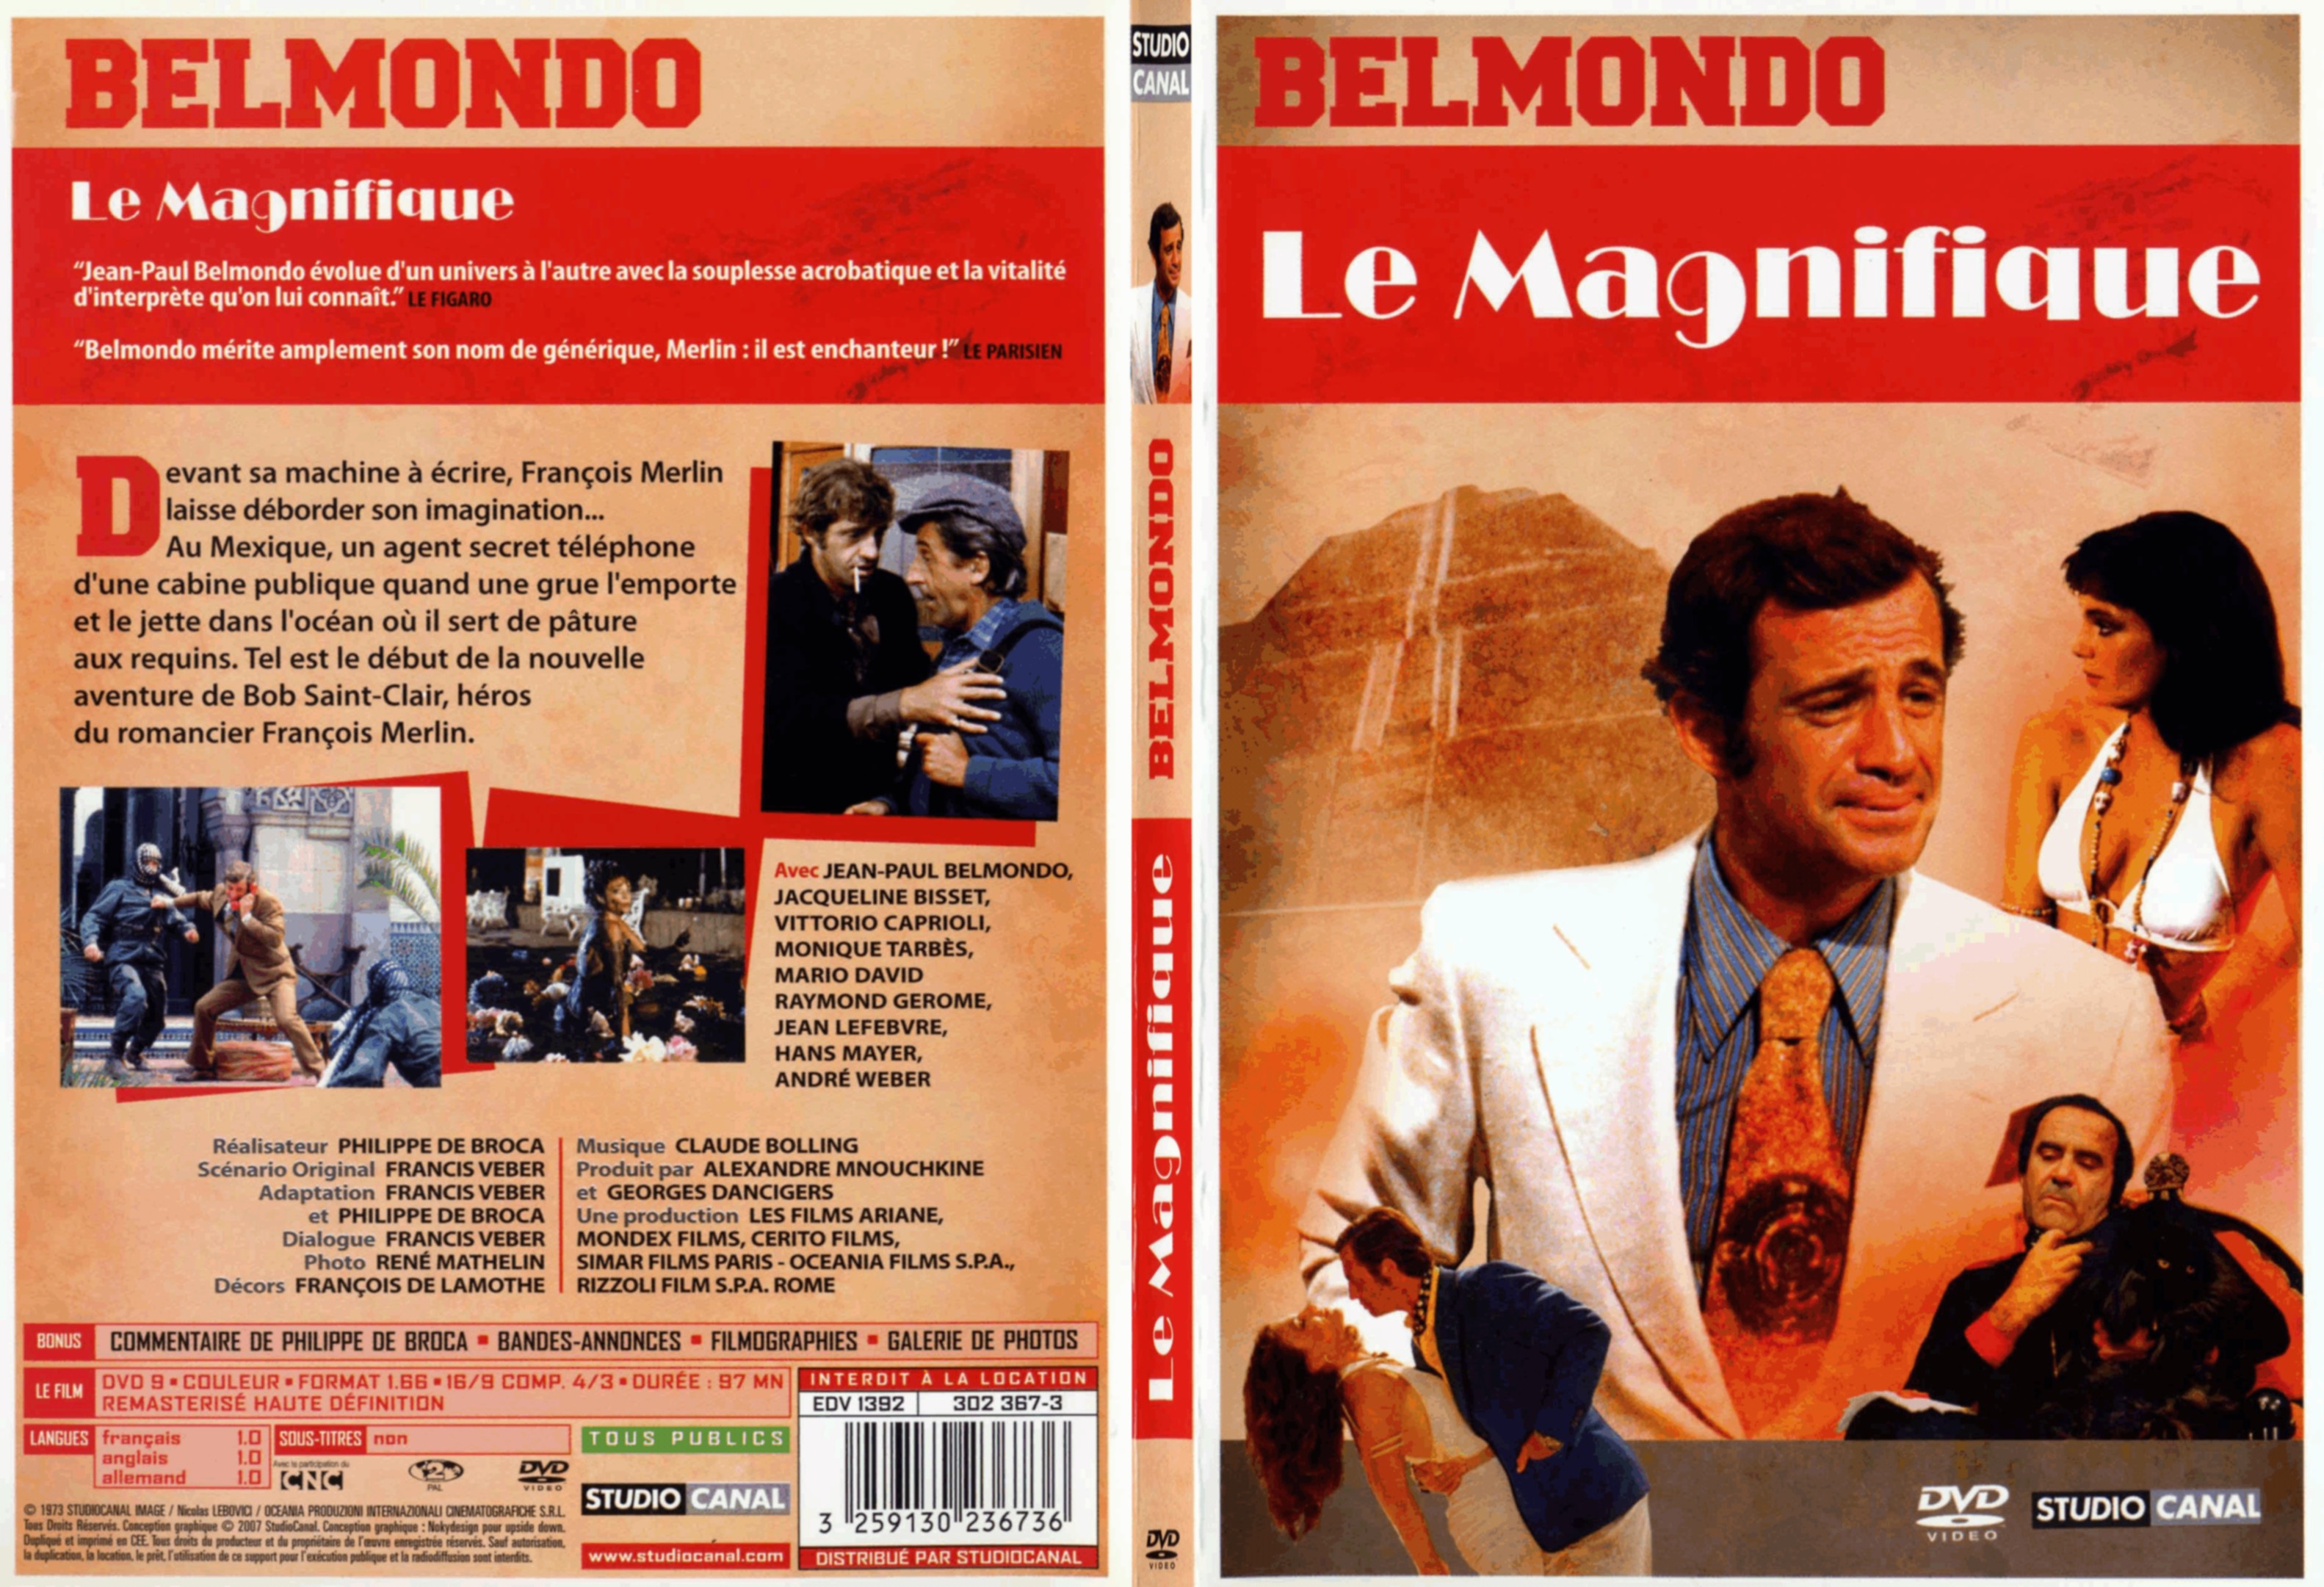 Jaquette DVD Le magnifique (Belmondo) - SLIM v3